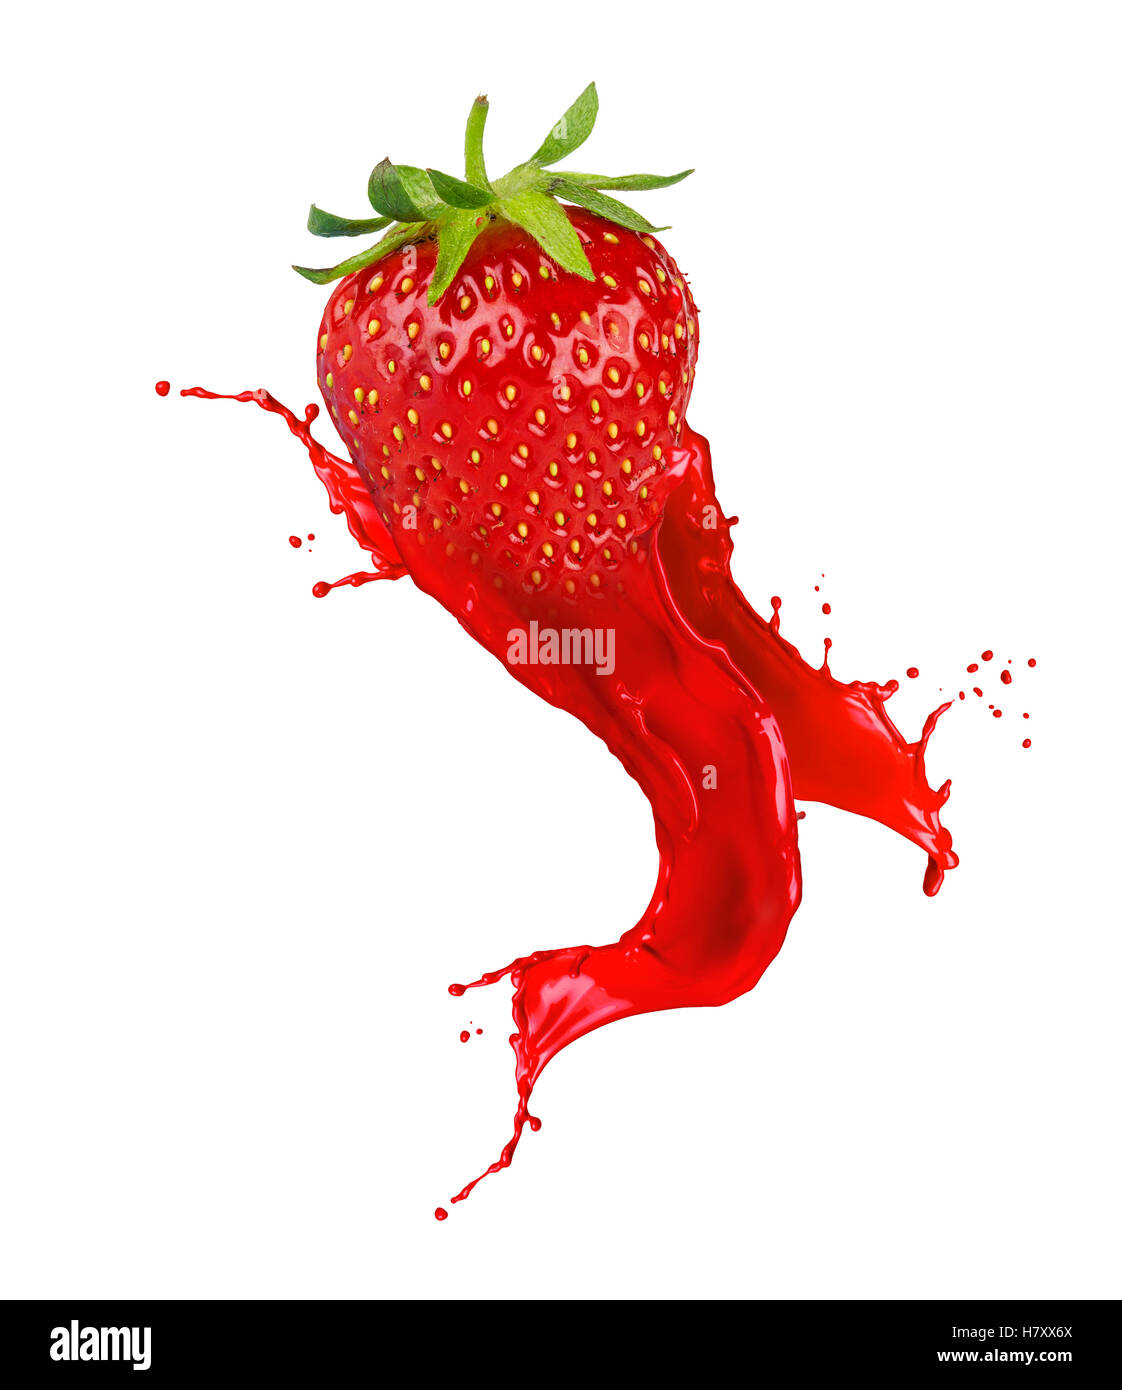 Strawberry abstract immagini e fotografie stock ad alta